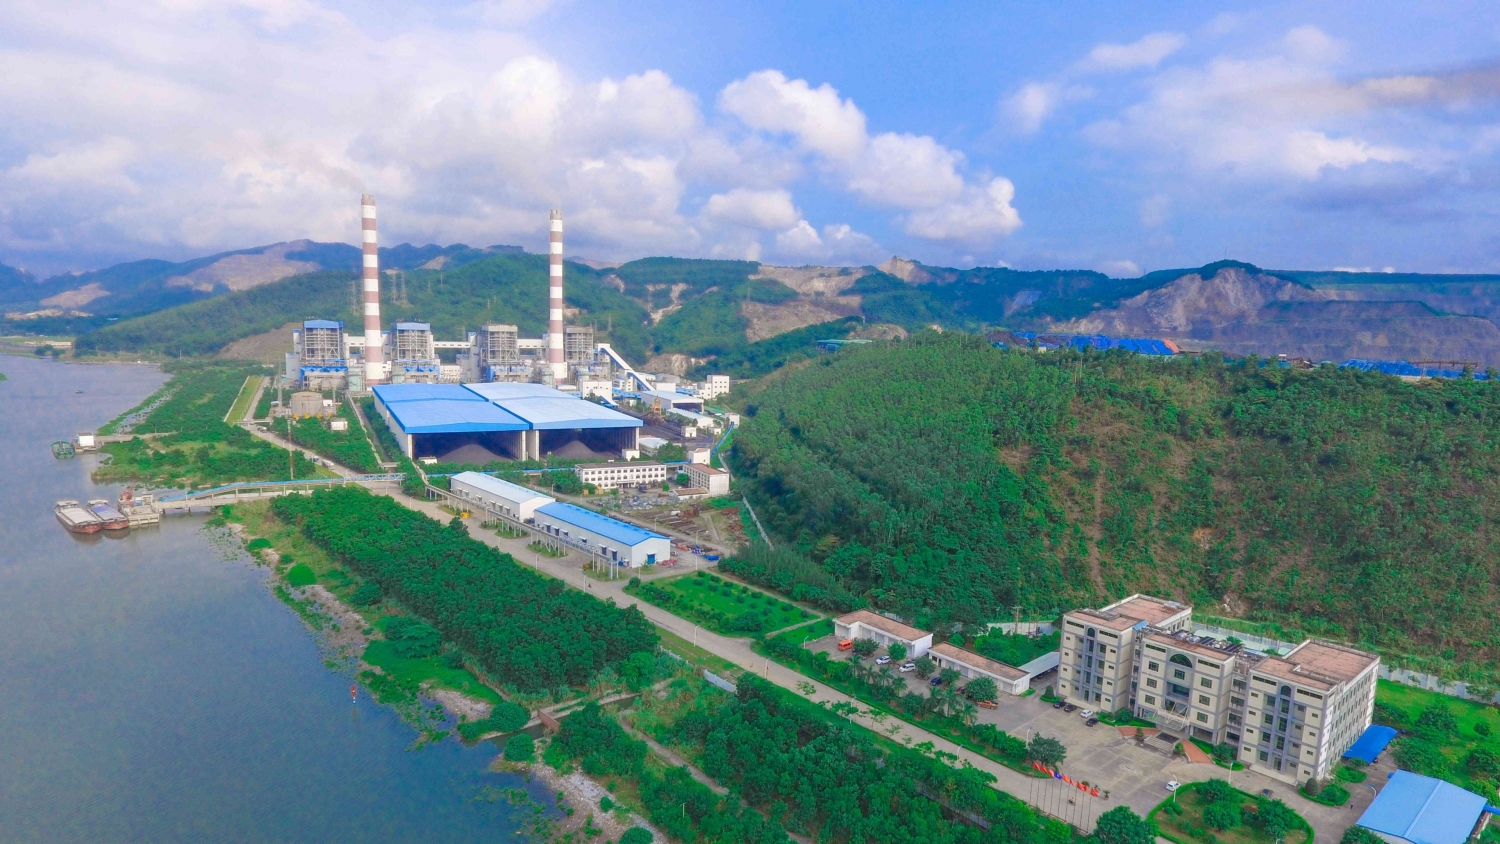 Nhiệt điện Quảng Ninh giảm tới 86% lợi nhuận trong quý IV/2022